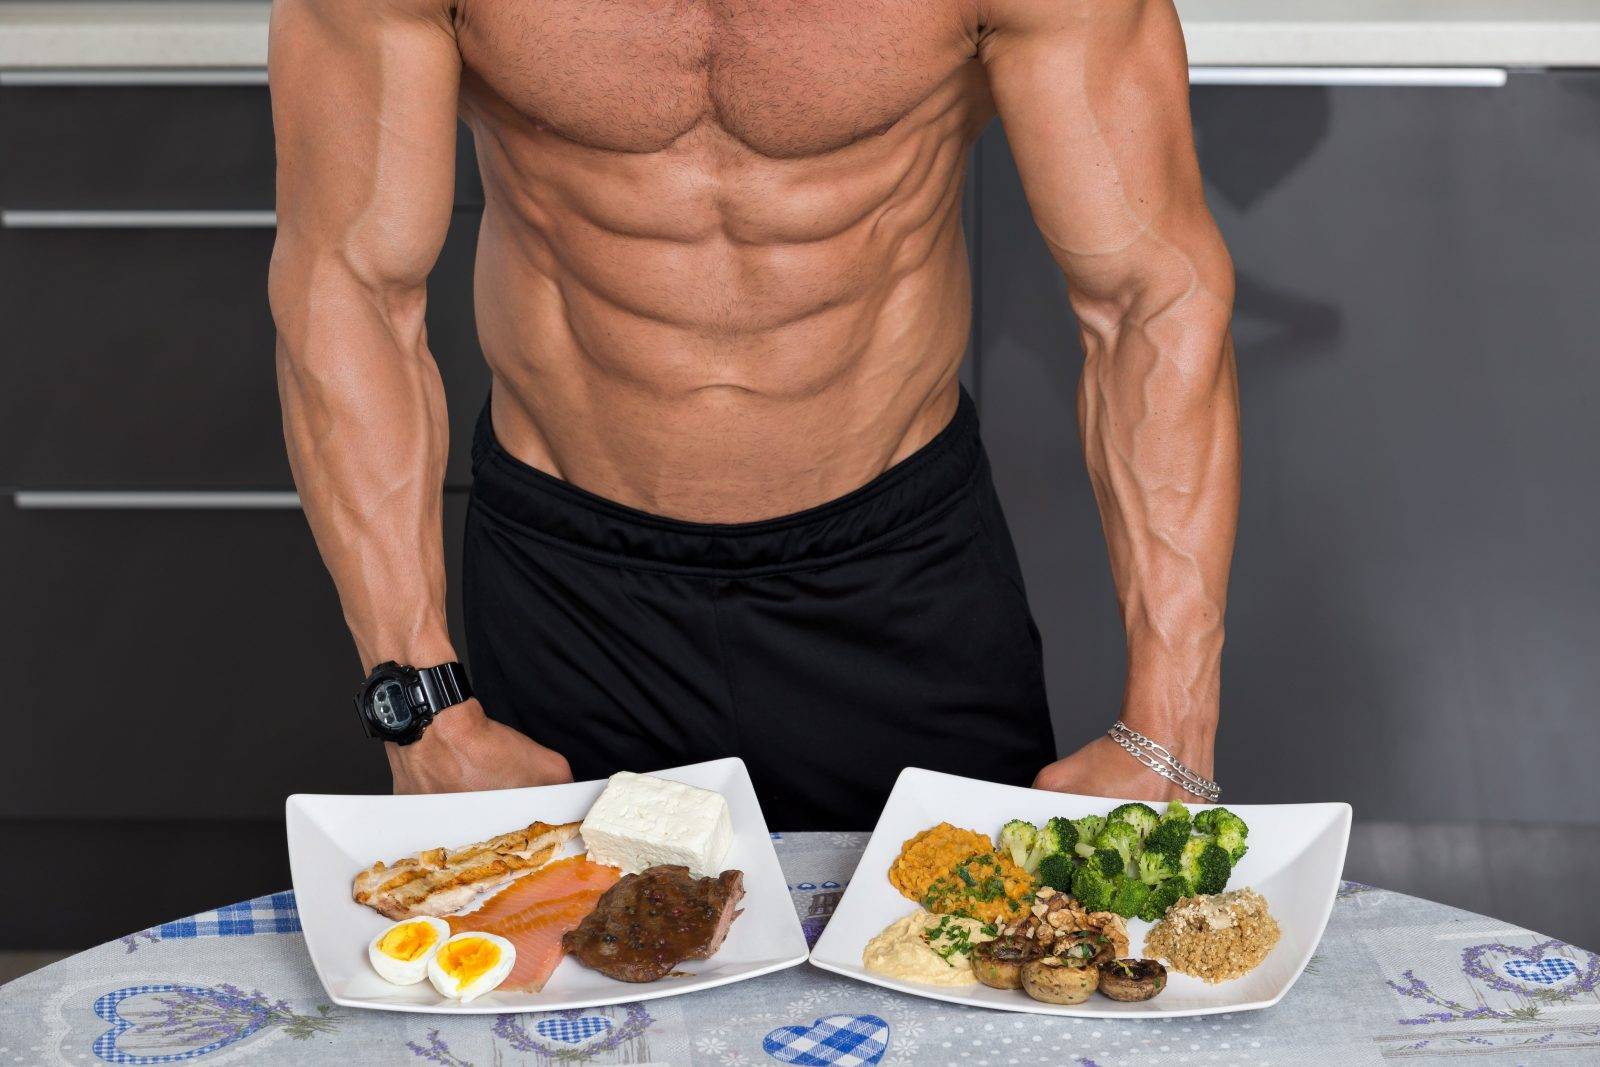 Питание для набора мышечной массы мужчинам: рацион и диета на неделю